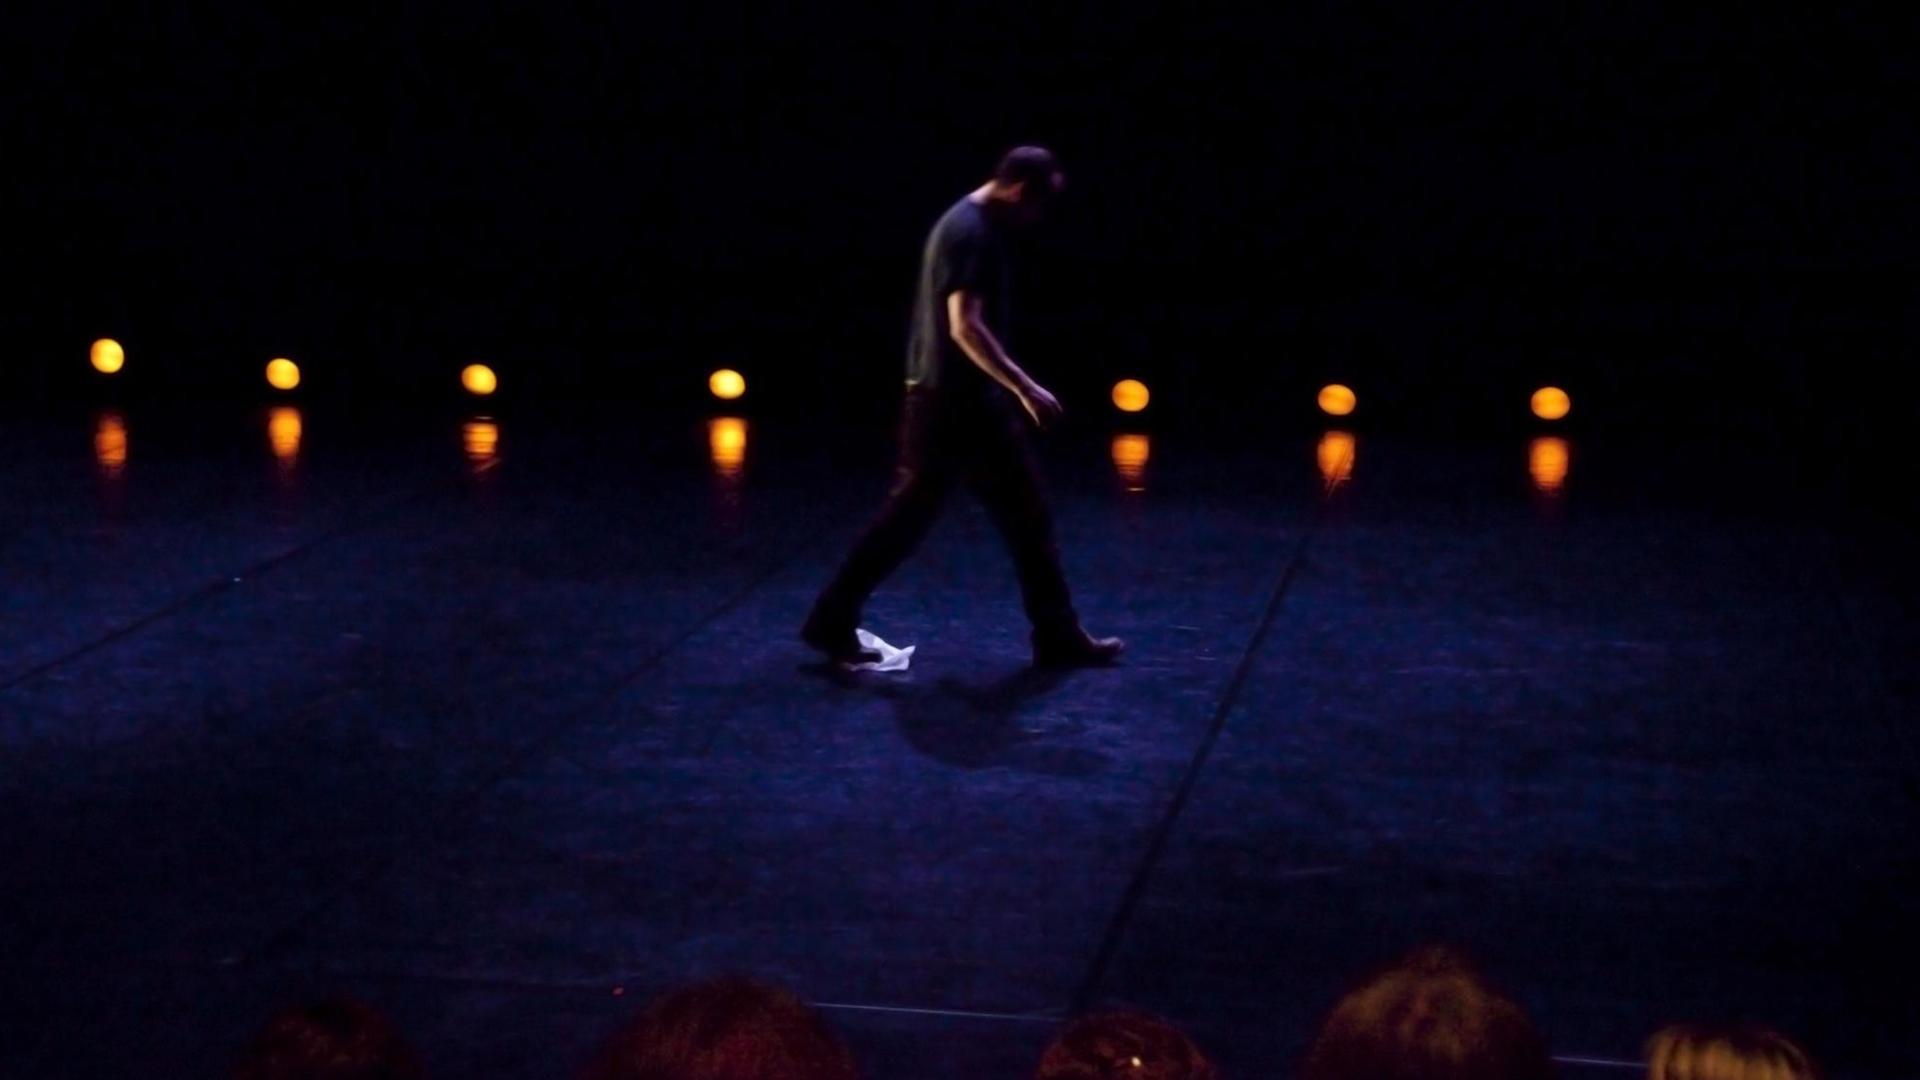 Ein Bühnenarbeiter trocknet mit einen Tuch am Fuß die schweiß getränkte Bühne nach einer Tanz-Performance.